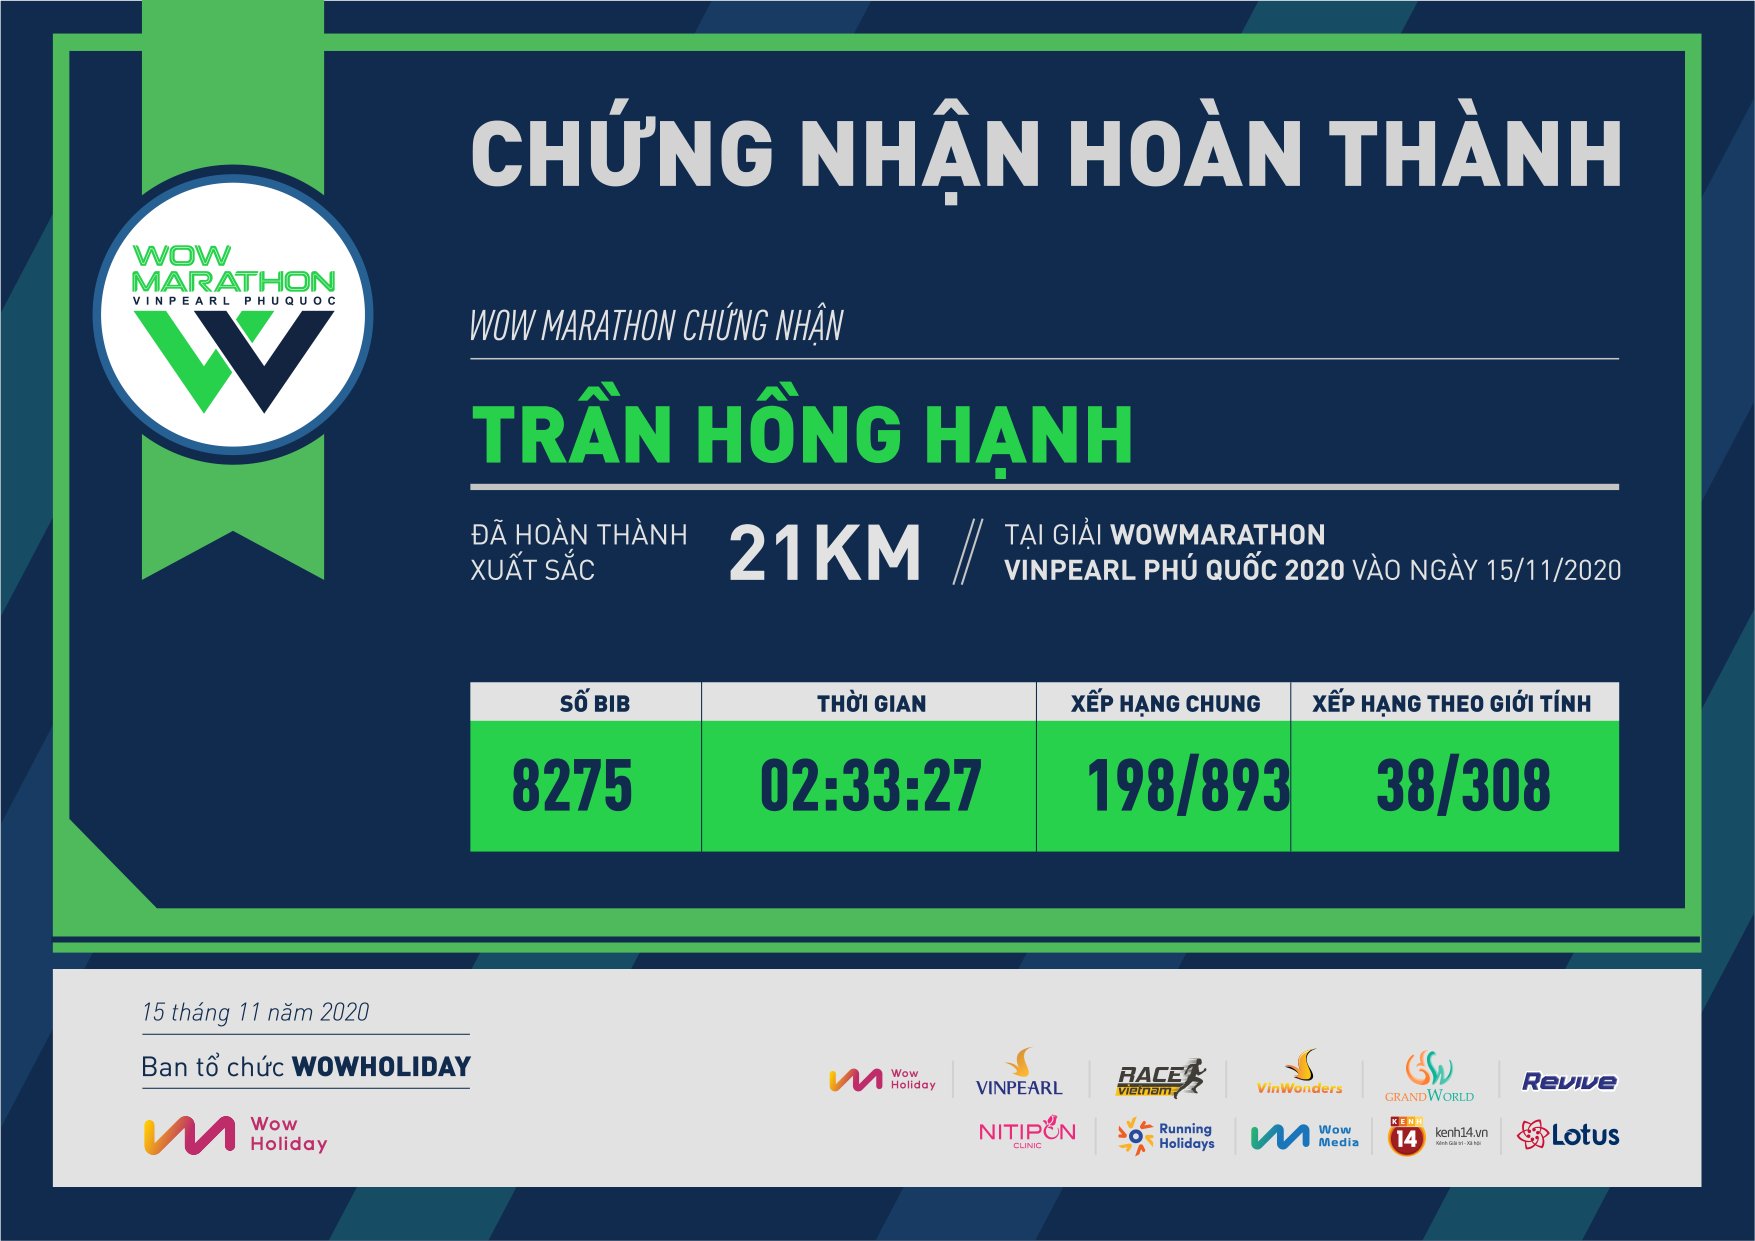 8275 - Trần Hồng Hạnh